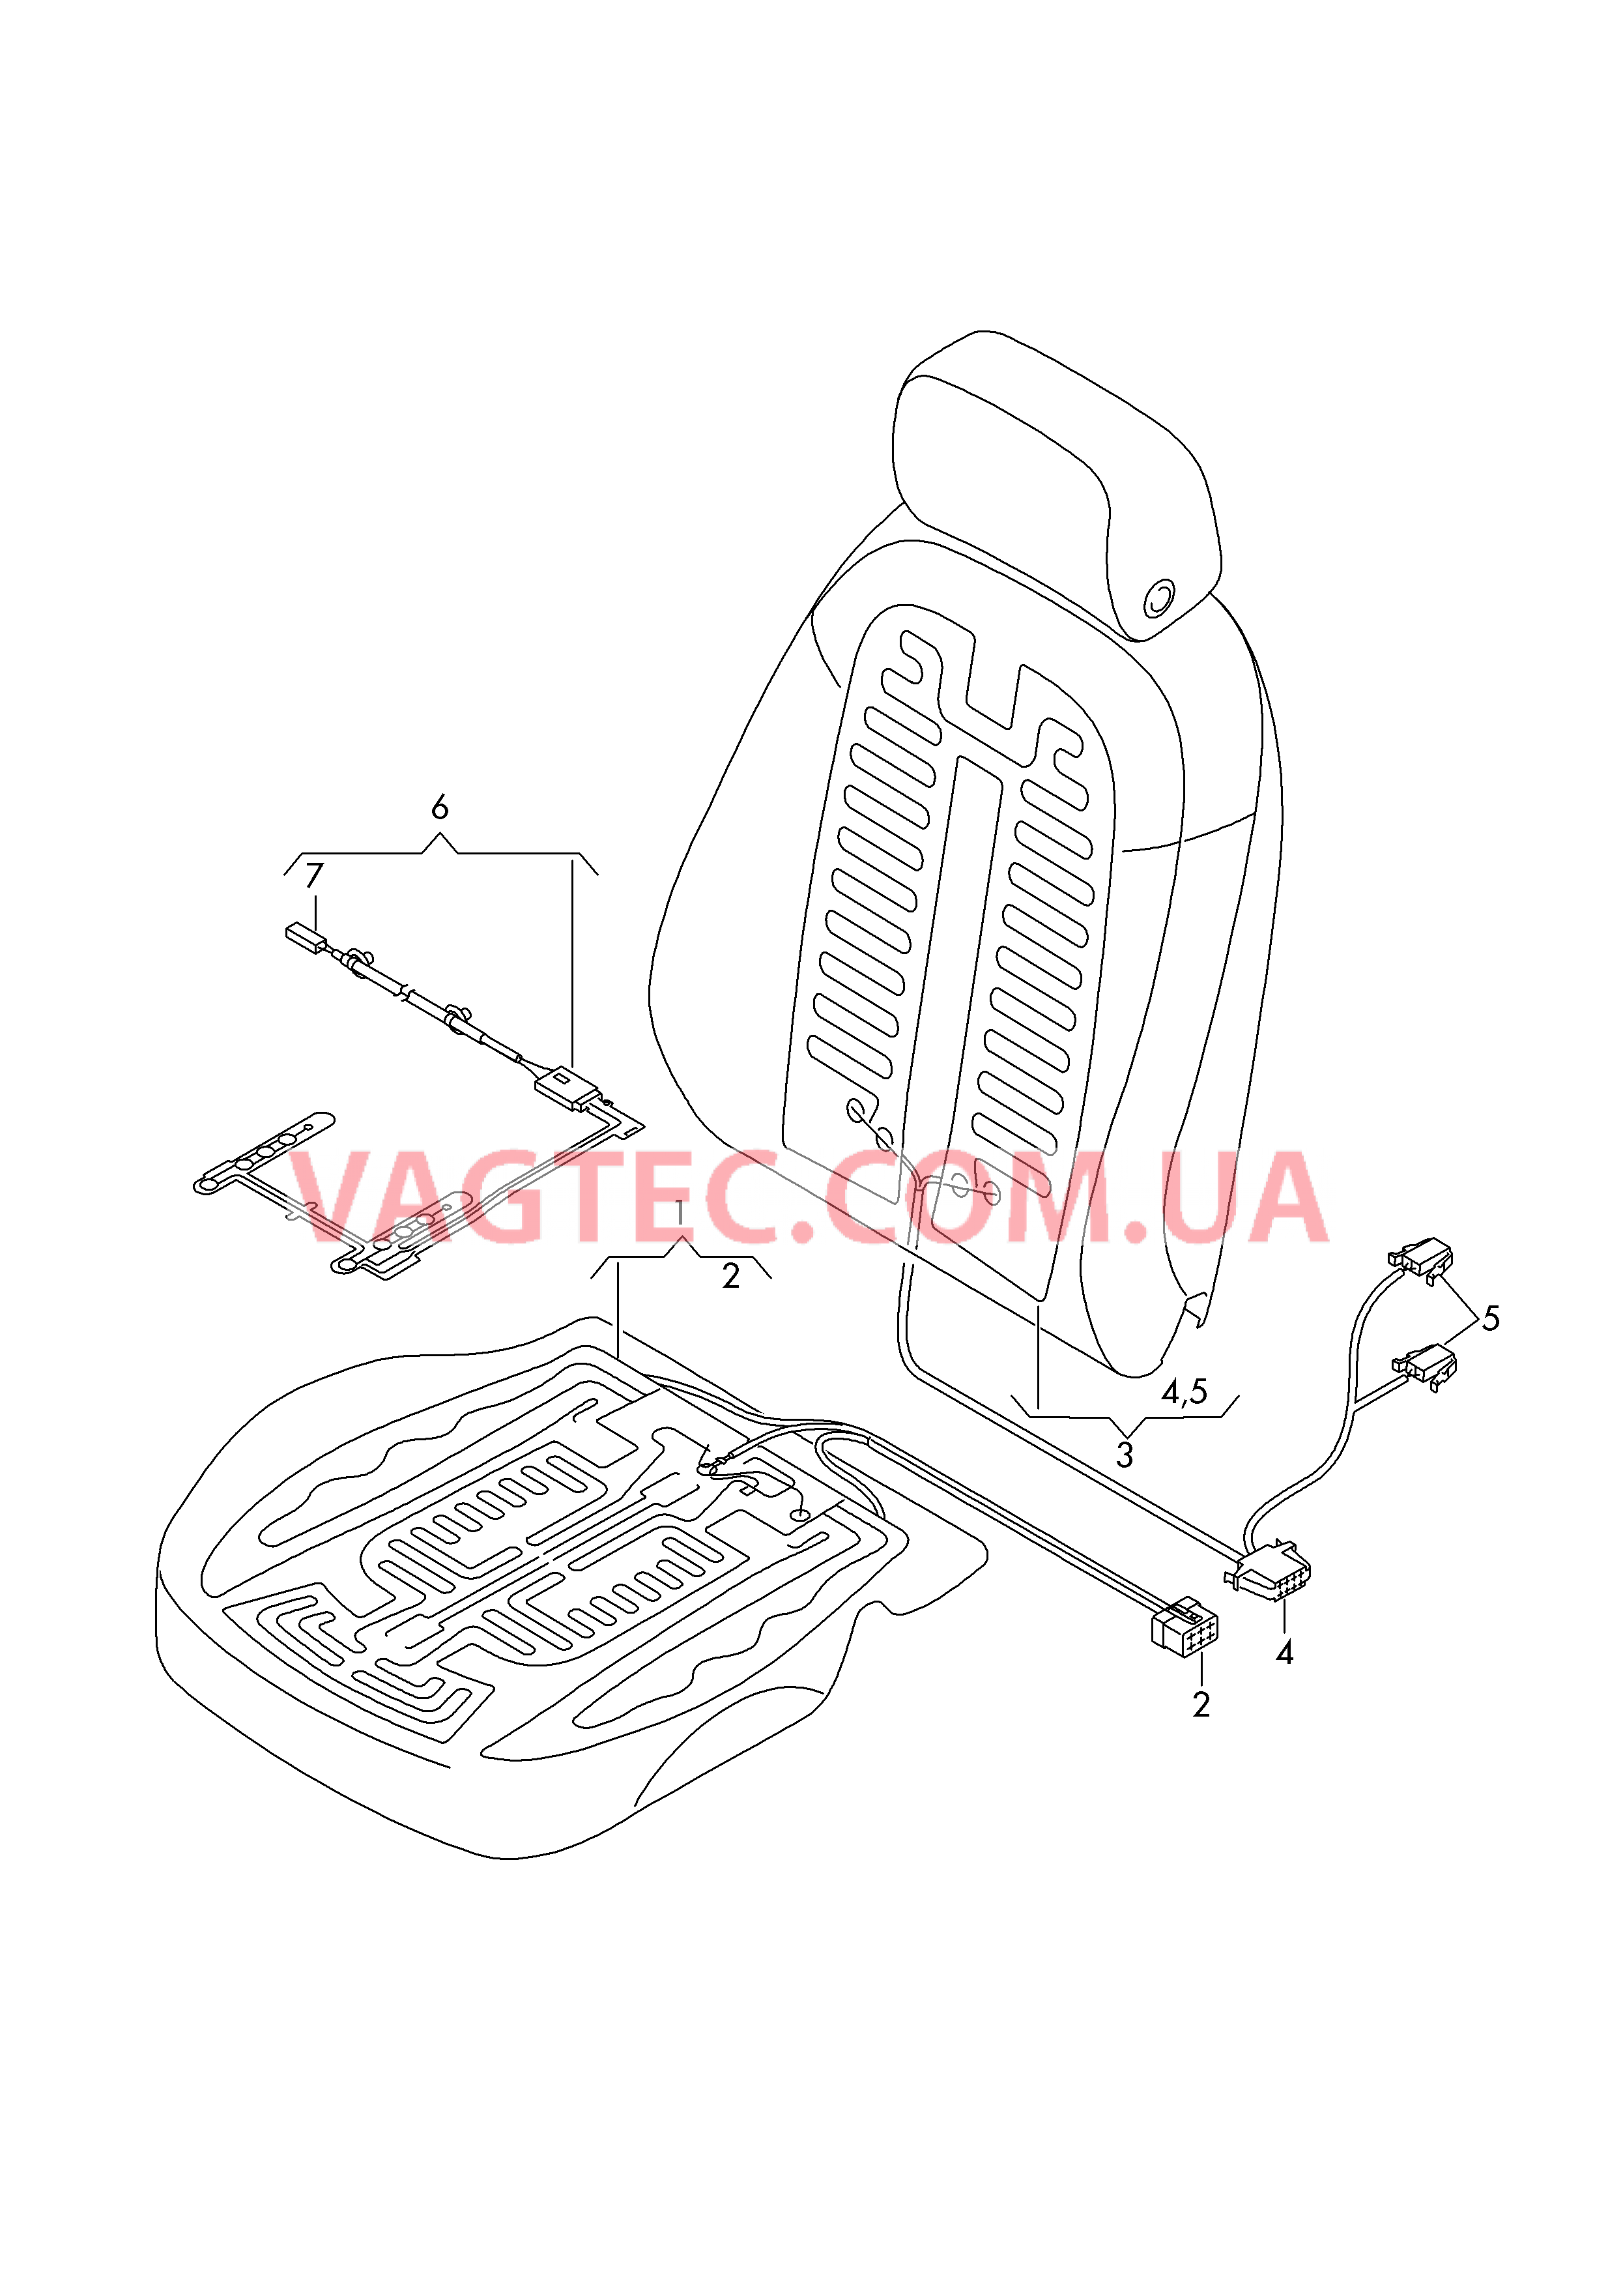 Нагревательный элемент спинки и подушки сиденья  Вставка распознавания занятости сиденья  для AUDI A7 2017